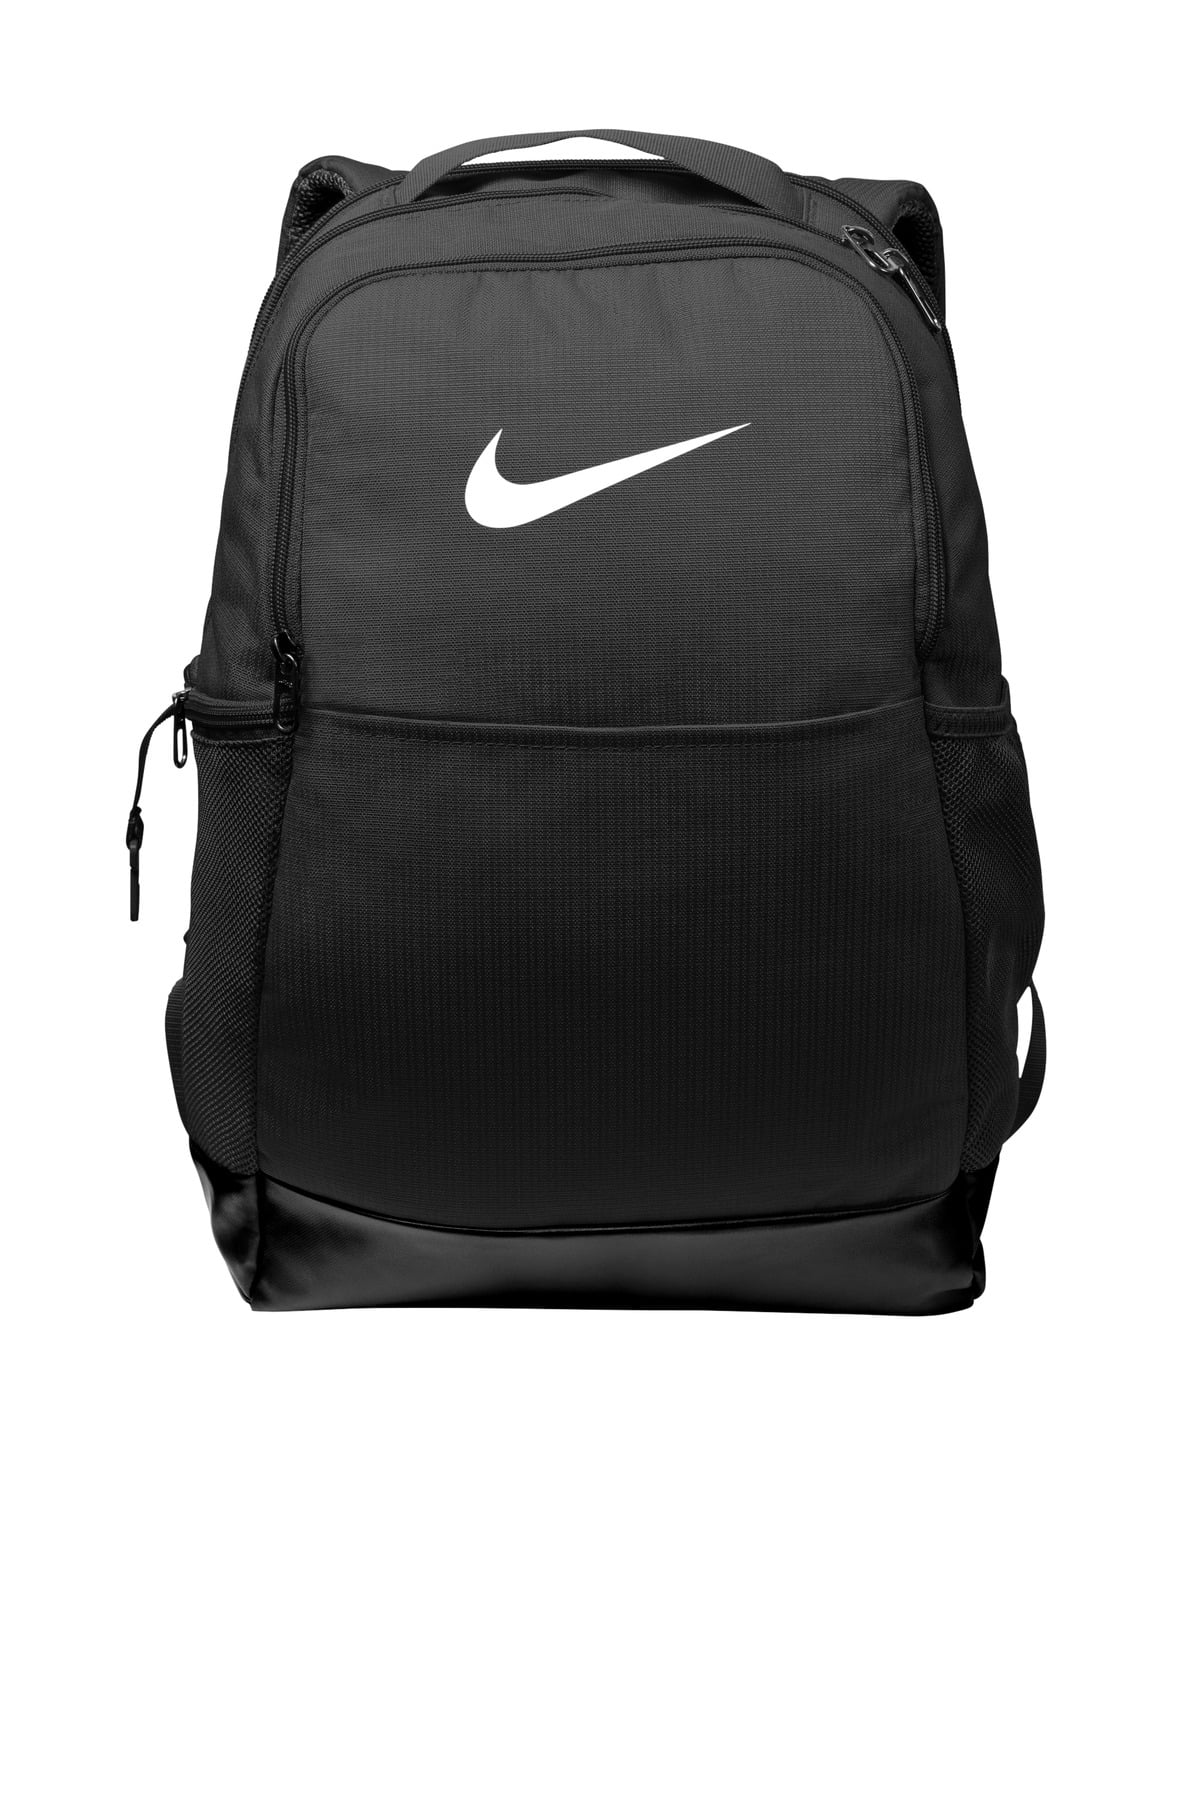 Nike | Bags | Copy Nike Backpack | Poshmark